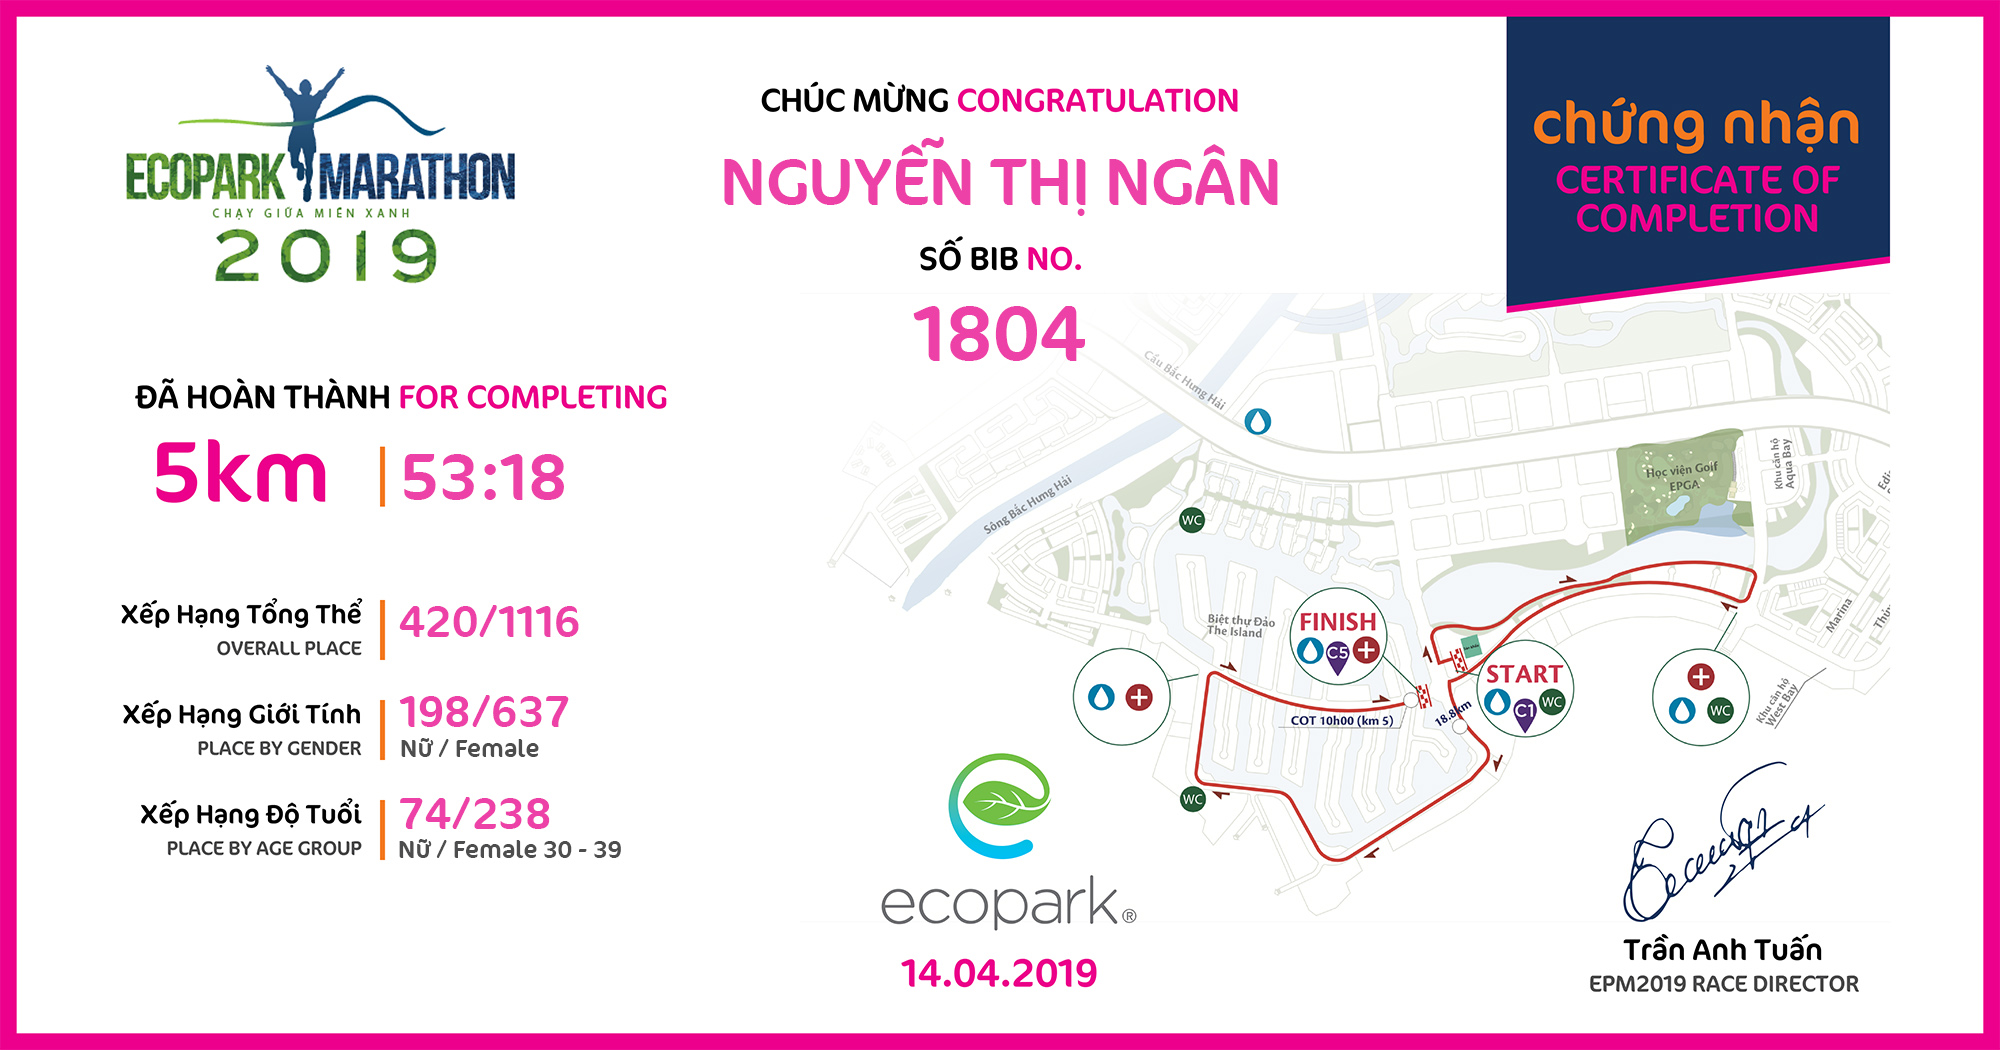 1804 - Nguyễn Thị Ngân